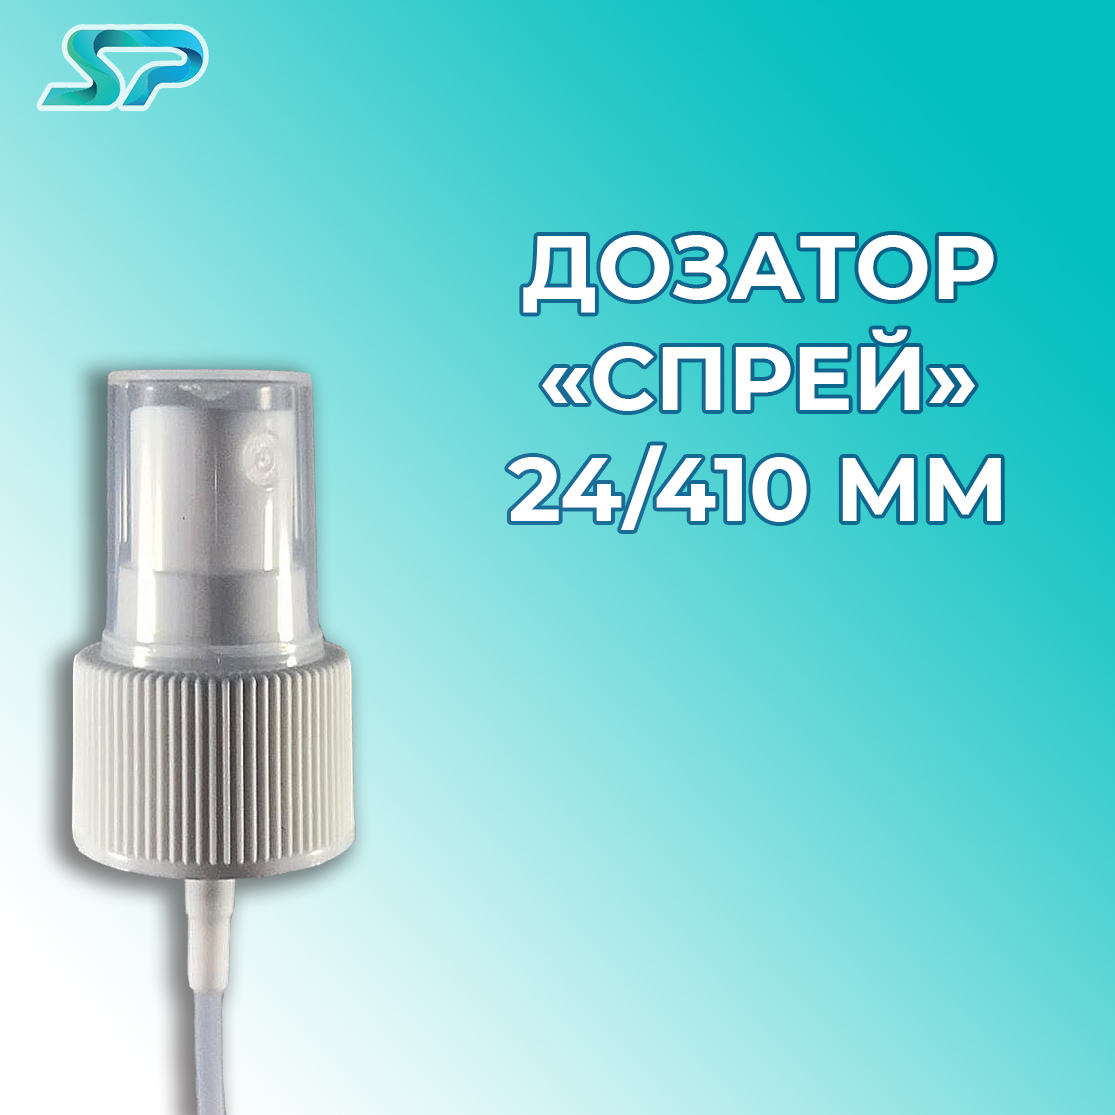 Дозатор "Спрей" 24/410 мм 